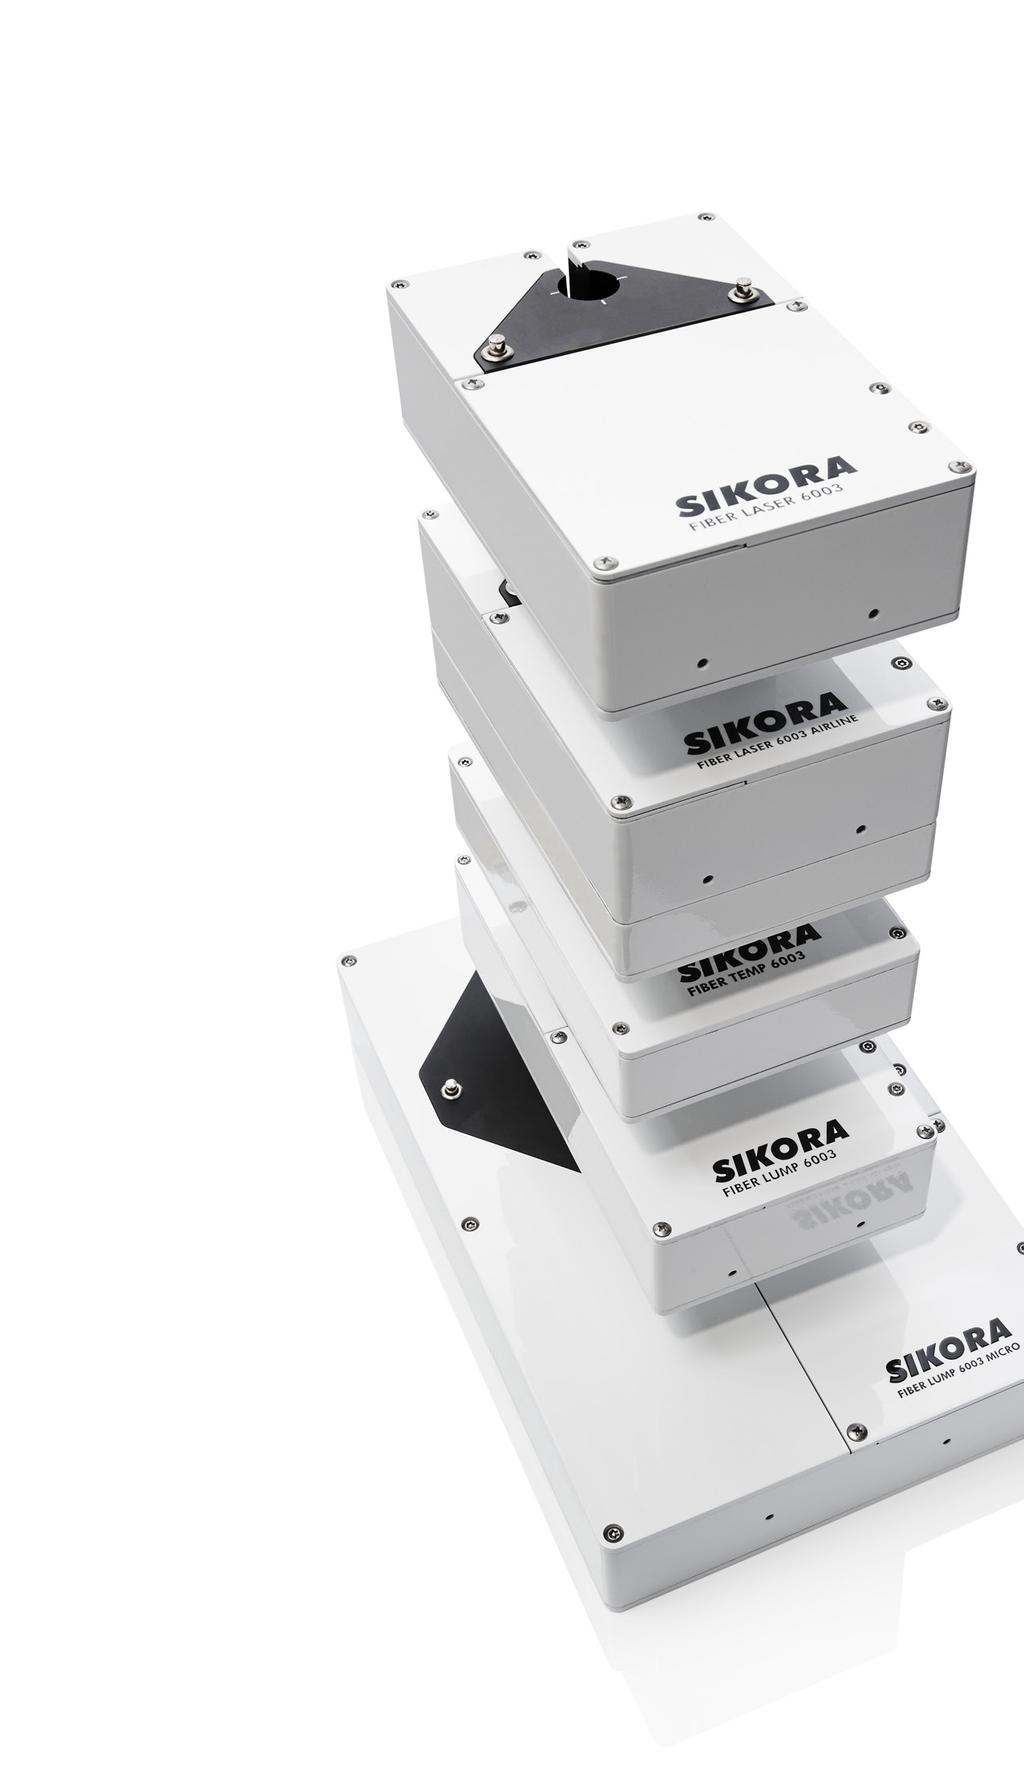 SIKORA EXTRA PRODUKTE EINE RUNDE SACHE SIKORA bietet Glasfasermessgeräte für den gesamten Ziehprozess Um hohe Datenmengen über lange Strecken zuverlässig und ohne Datenverlust zu transportieren,